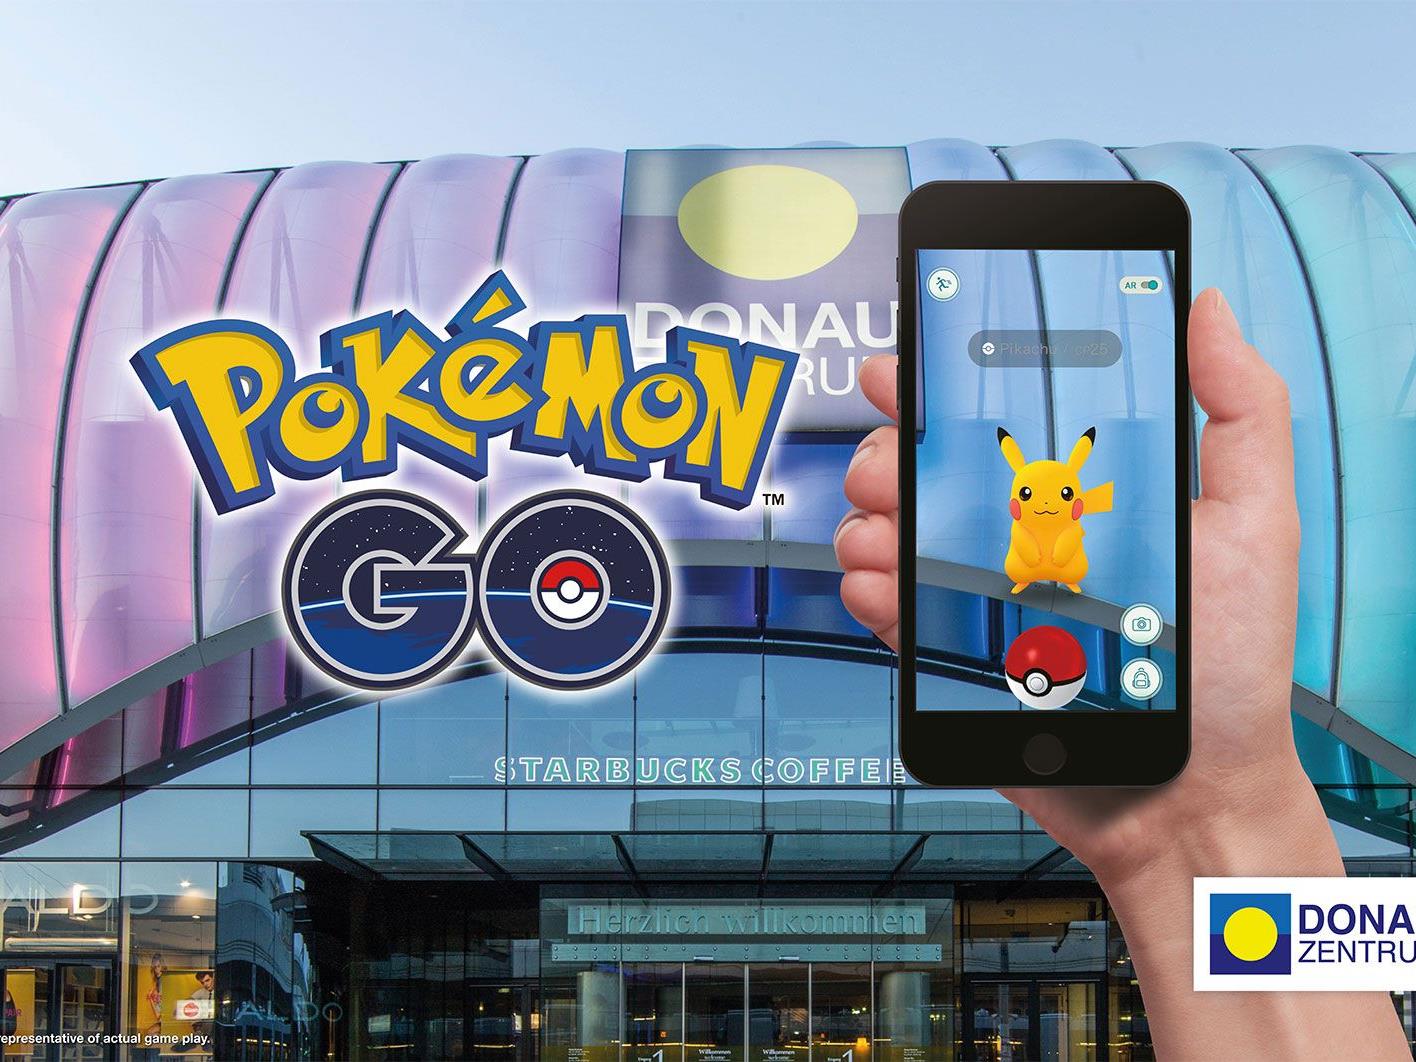 Die muntere Jagd im Rahmen von Pokémon GO findet auch im Donau Zentrum statt